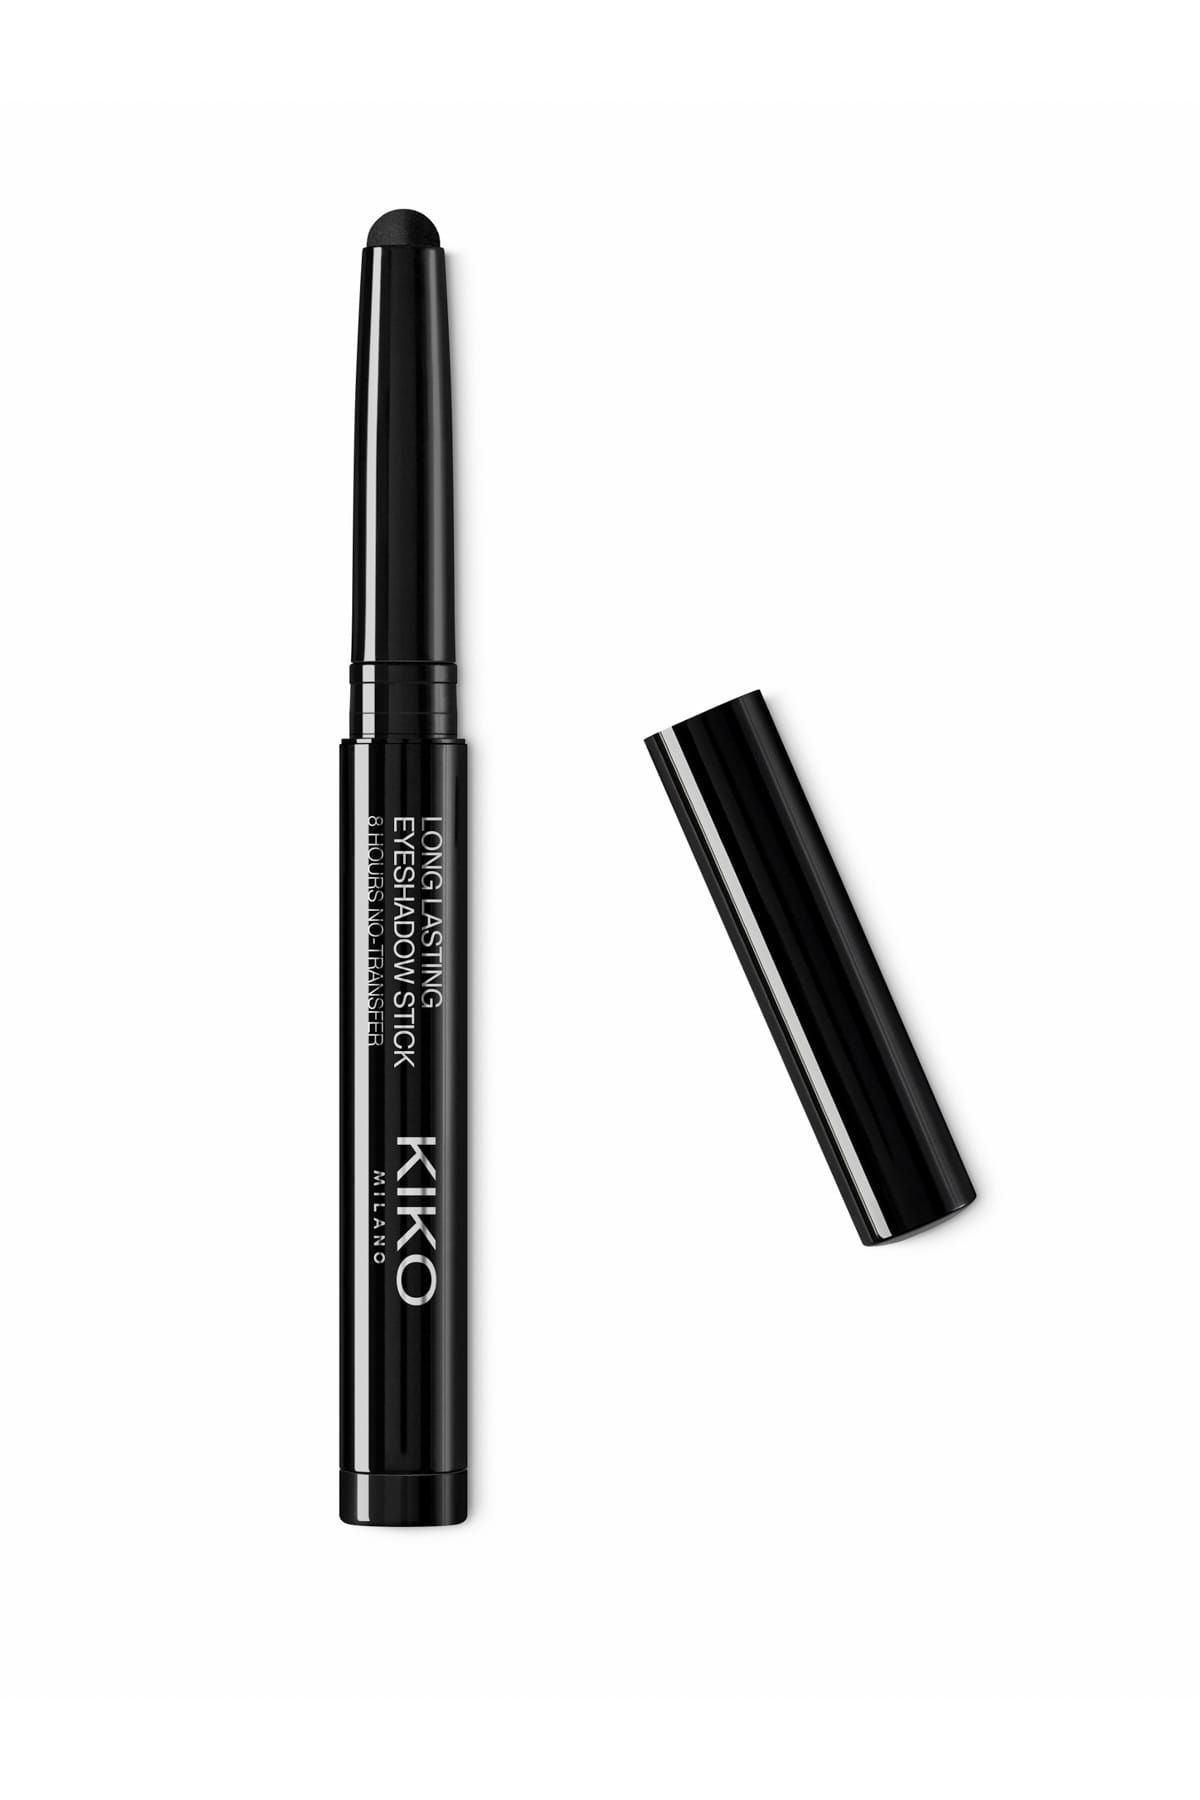 KIKO Uzun Süre Kalıcı Stick Göz Farı - Long Lasting Stick Eyeshadow 20 Black 8025272643023